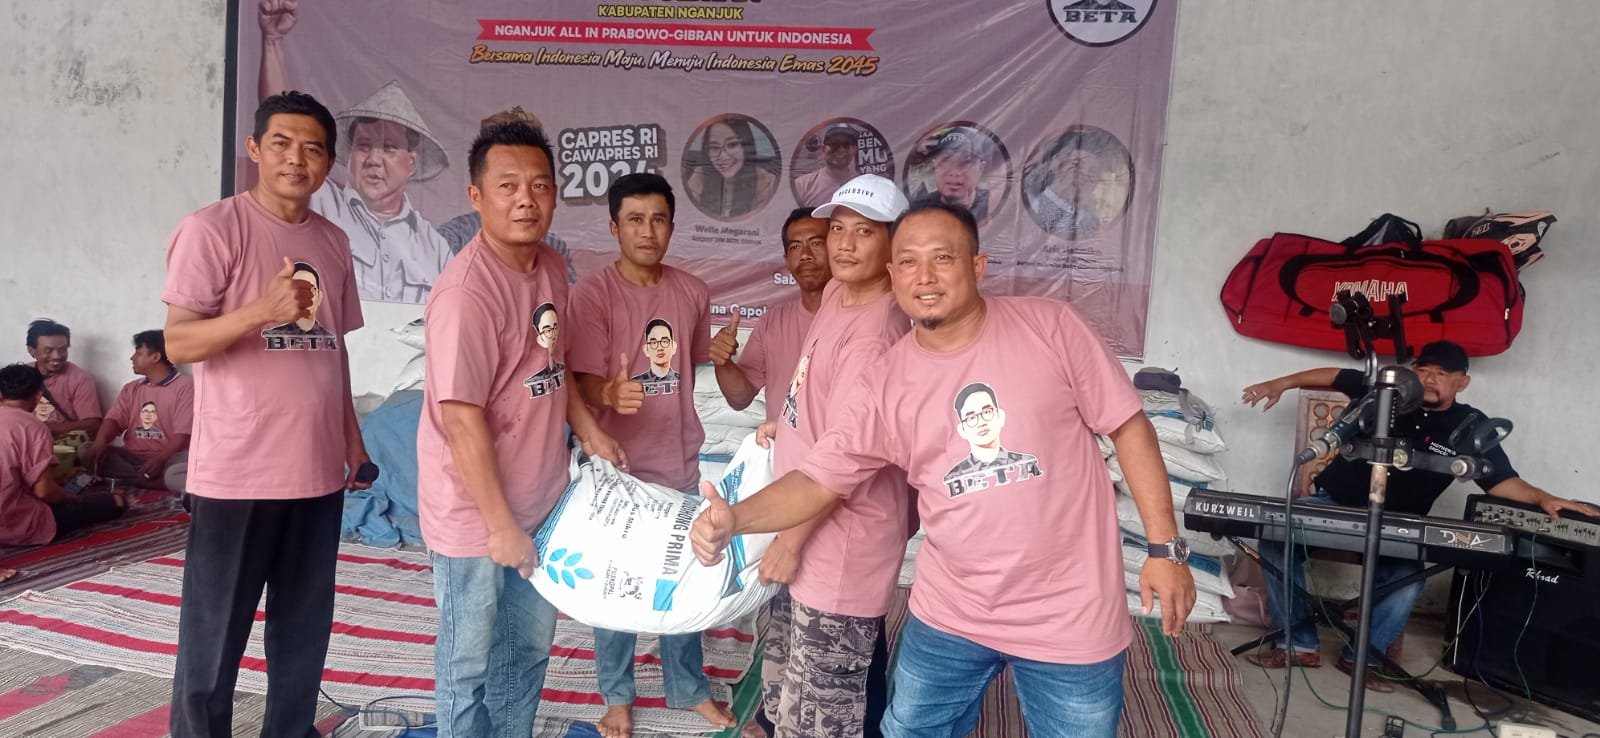 Nganjuk Inisiator Konsolidasi Relawan Petani Milenial BETA Prabowo- Gibran